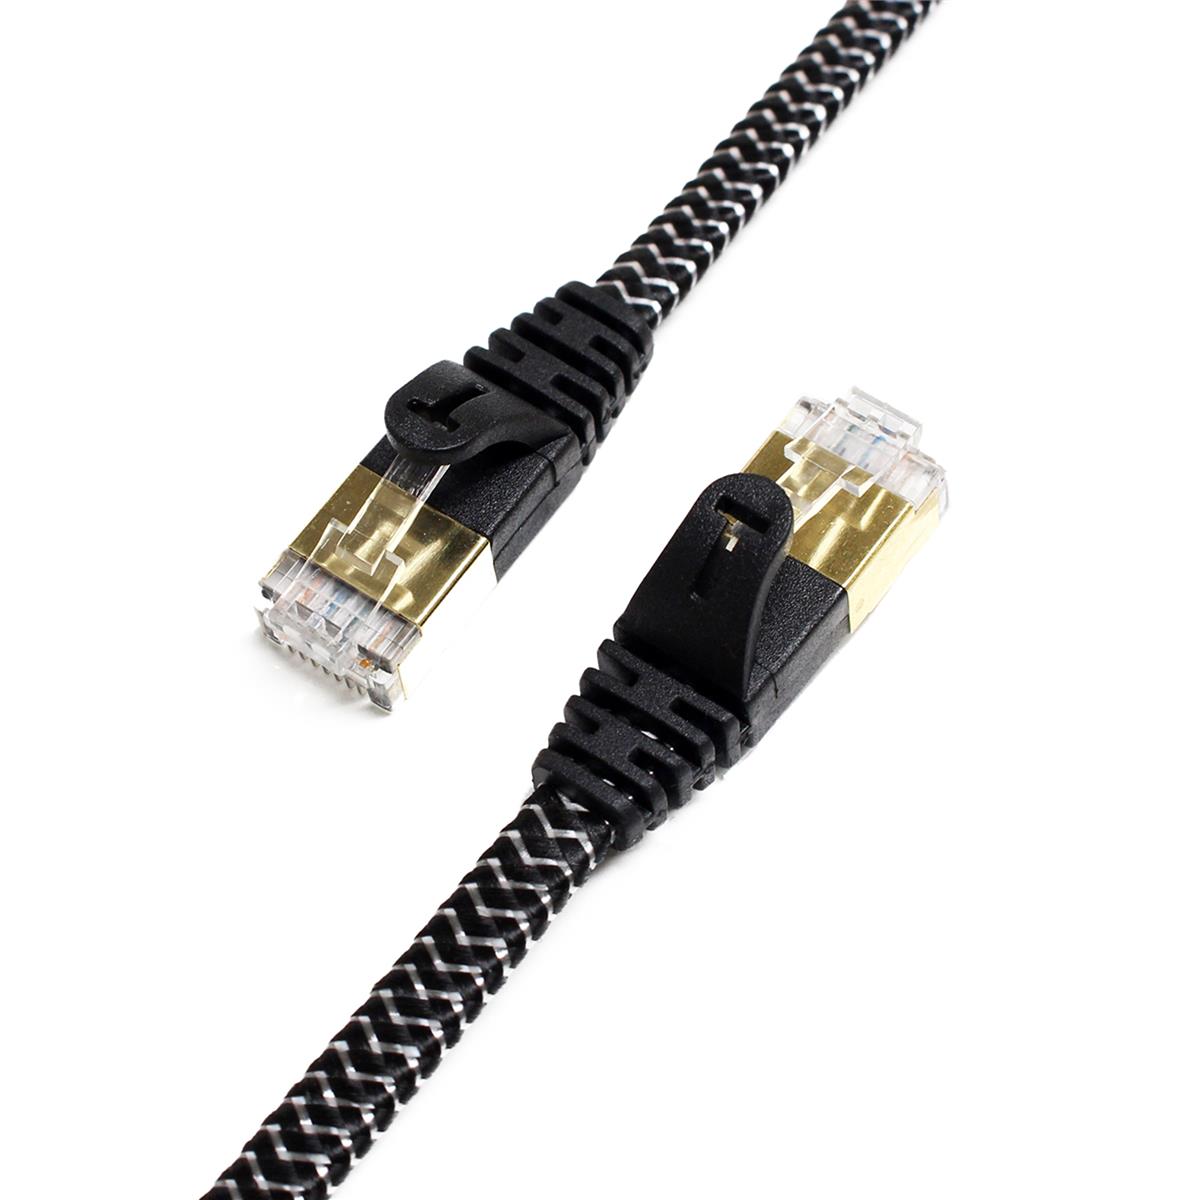 Tera Grand 25 CAT-7 10 Gigabit Ultra Flat Ethernet Кабель в оплетке, черный белый